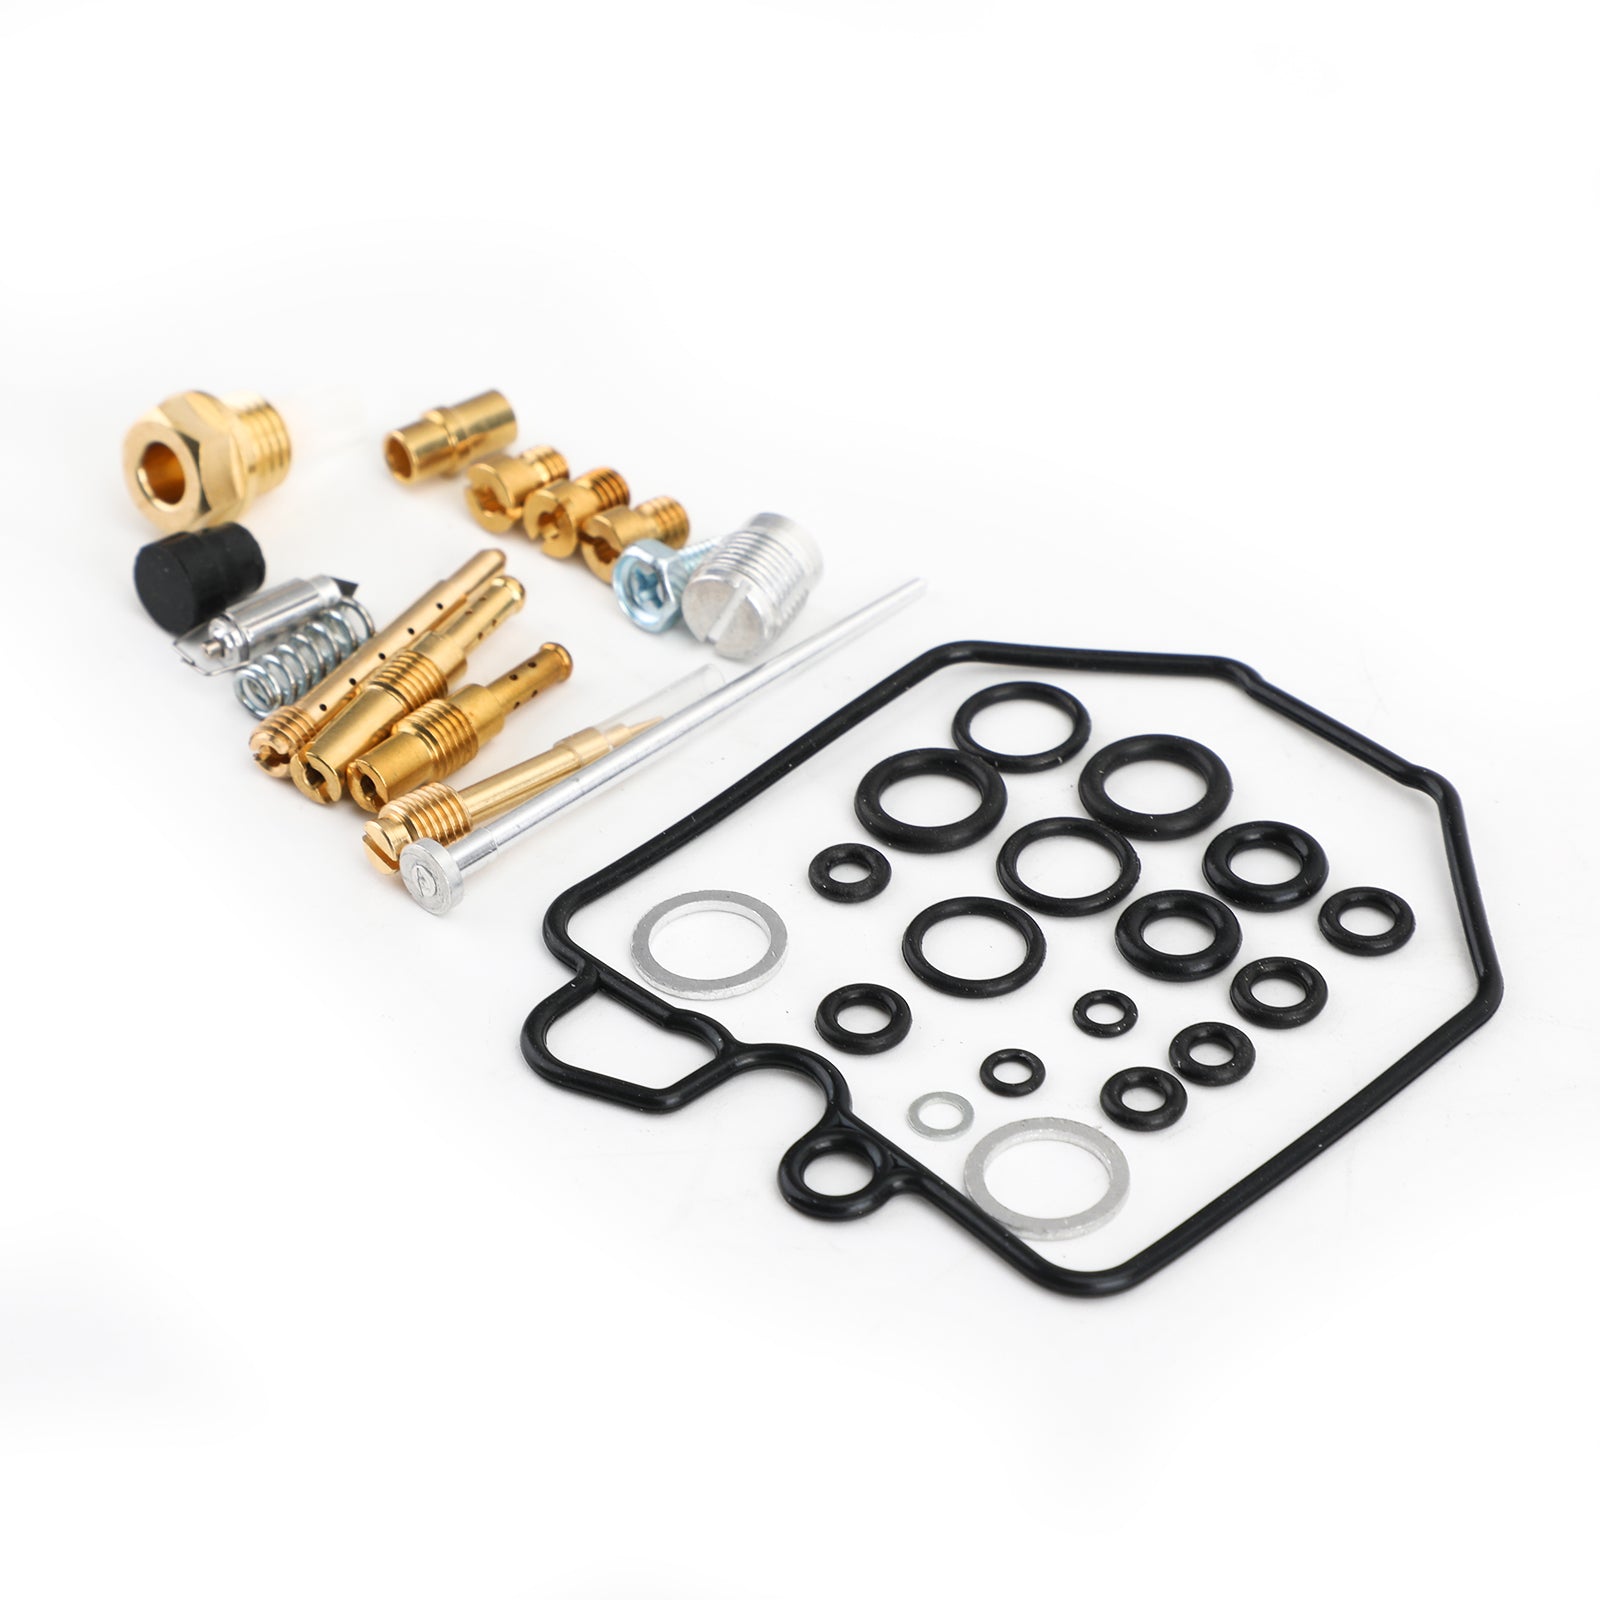 Carburetor Carb Repair Rebuild Seal Kit for HONDA CBX 1000 78-83 Pro Link 81-83